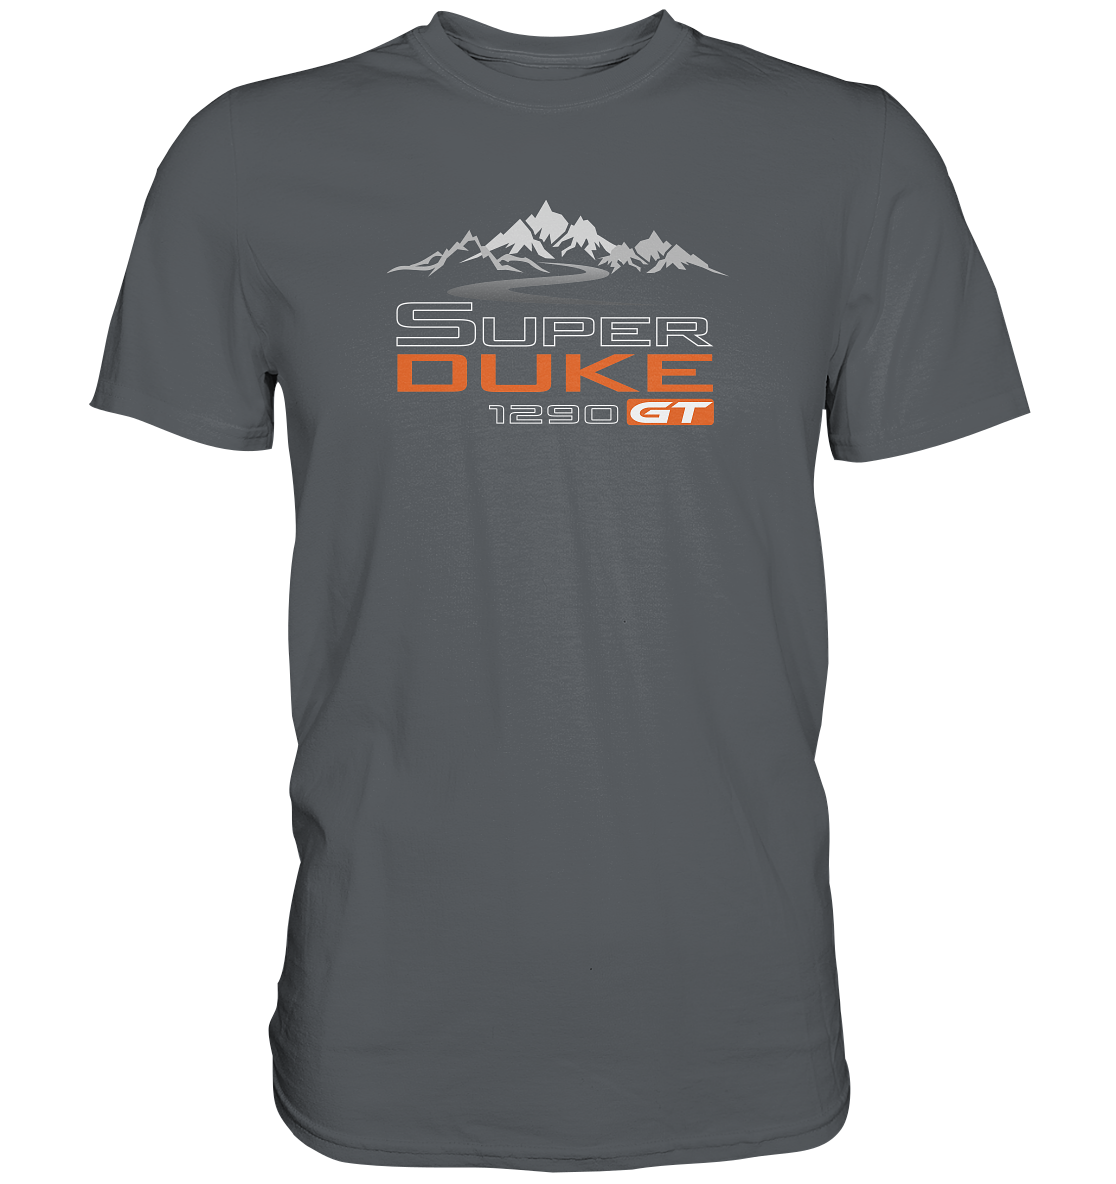 Super Duke 1290 GT Tourmotiv - Premium unisex Shirt